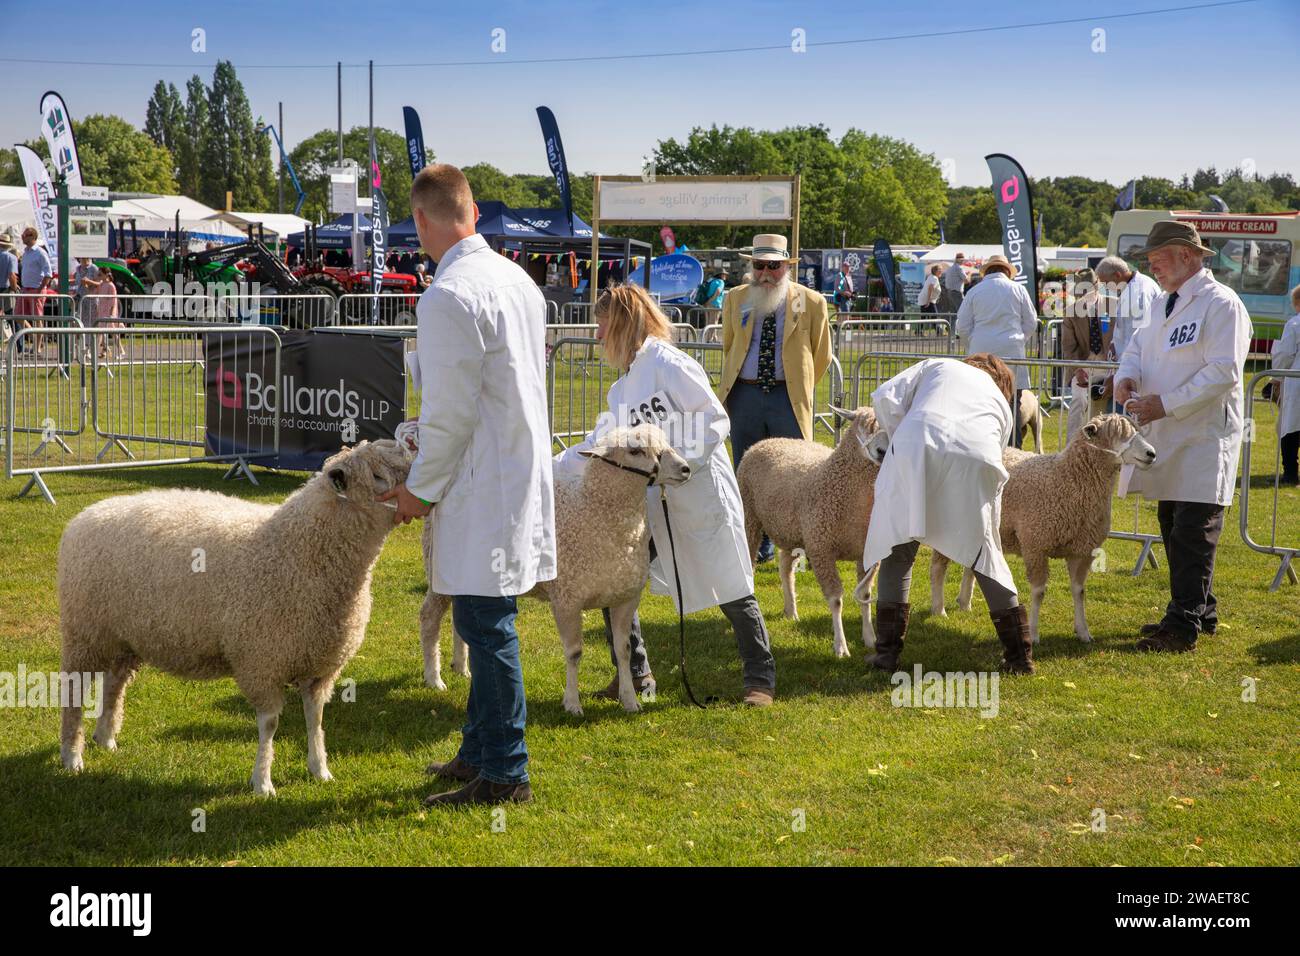 Royaume-Uni, Angleterre, Worcestershire, Malvern Wells, Royal 3 Counties Show, moutons dans le ring en cours de jugement Banque D'Images